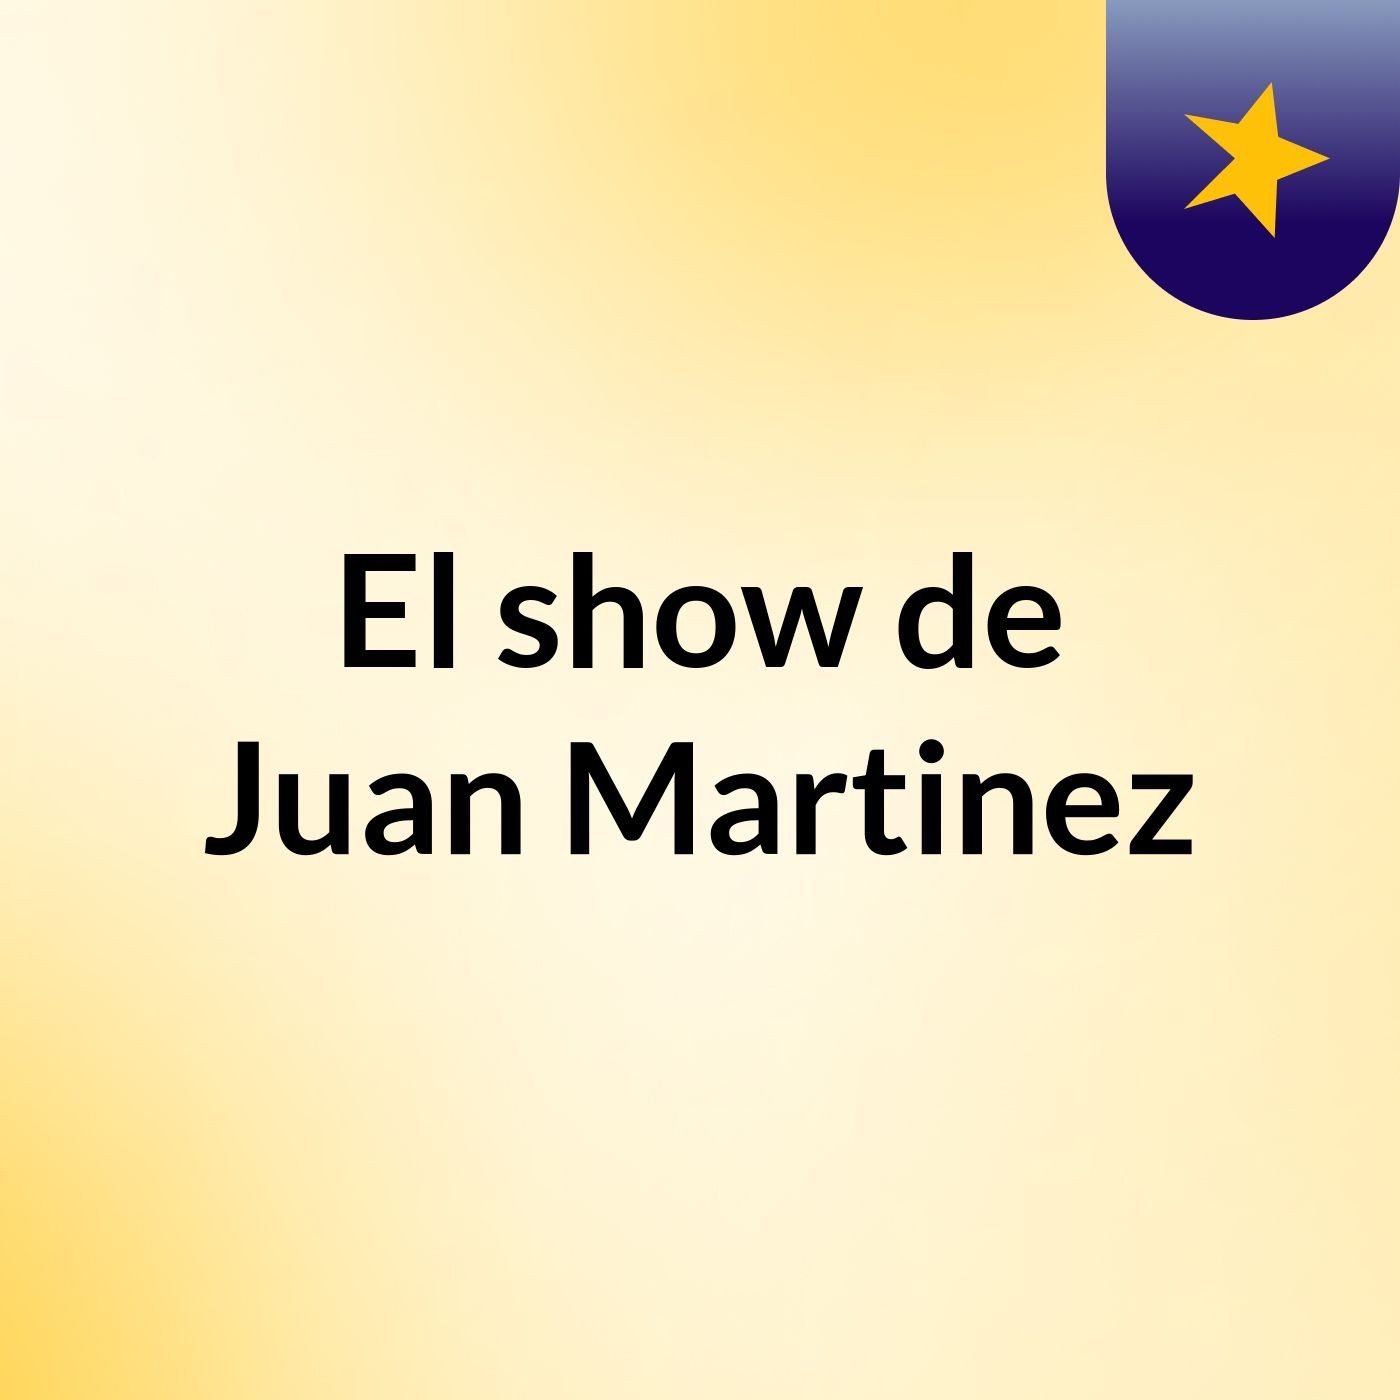 Episodio 5 - El show de Juan Martinez